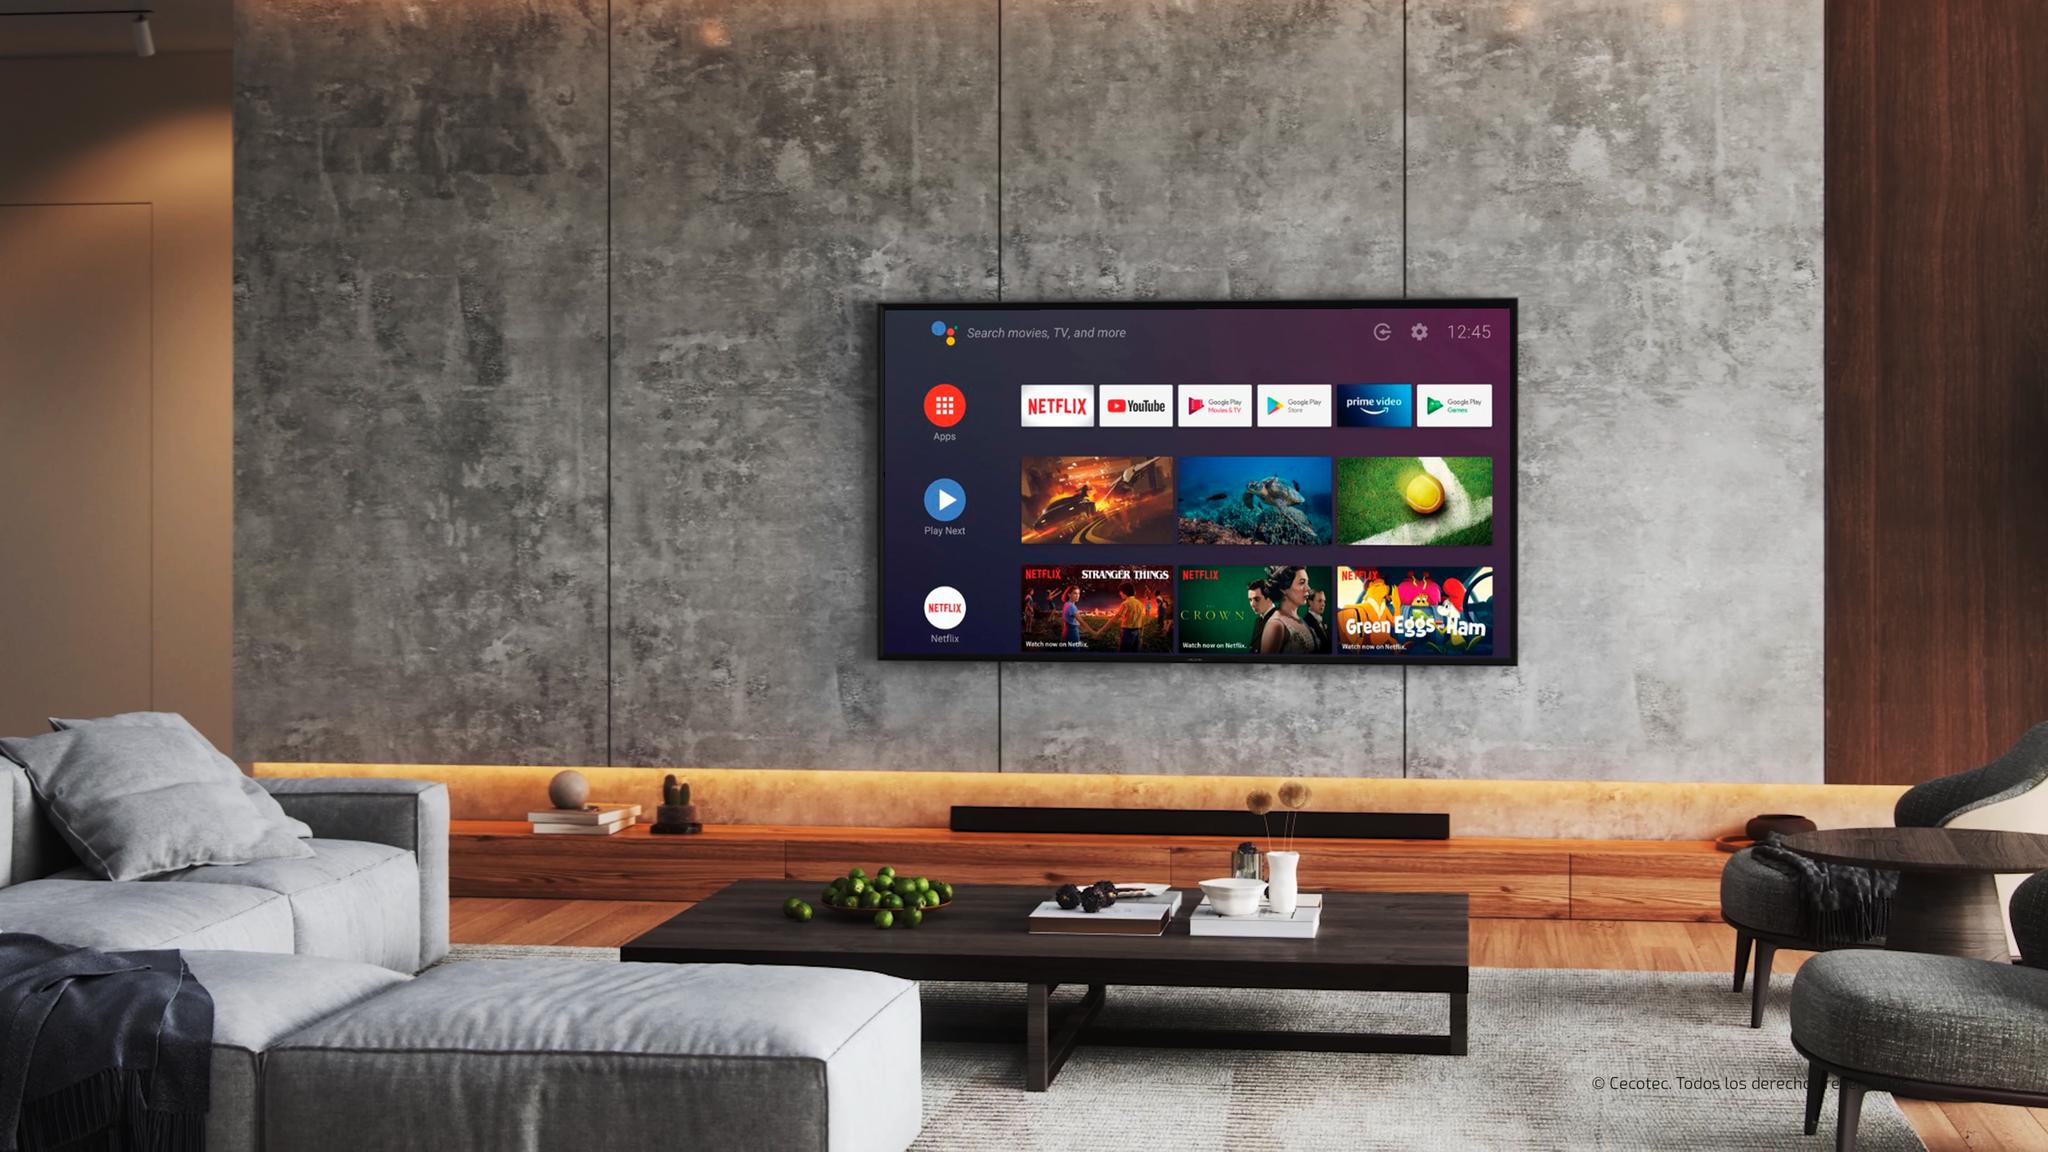 Android TV 11: todo tu contenido a un clic